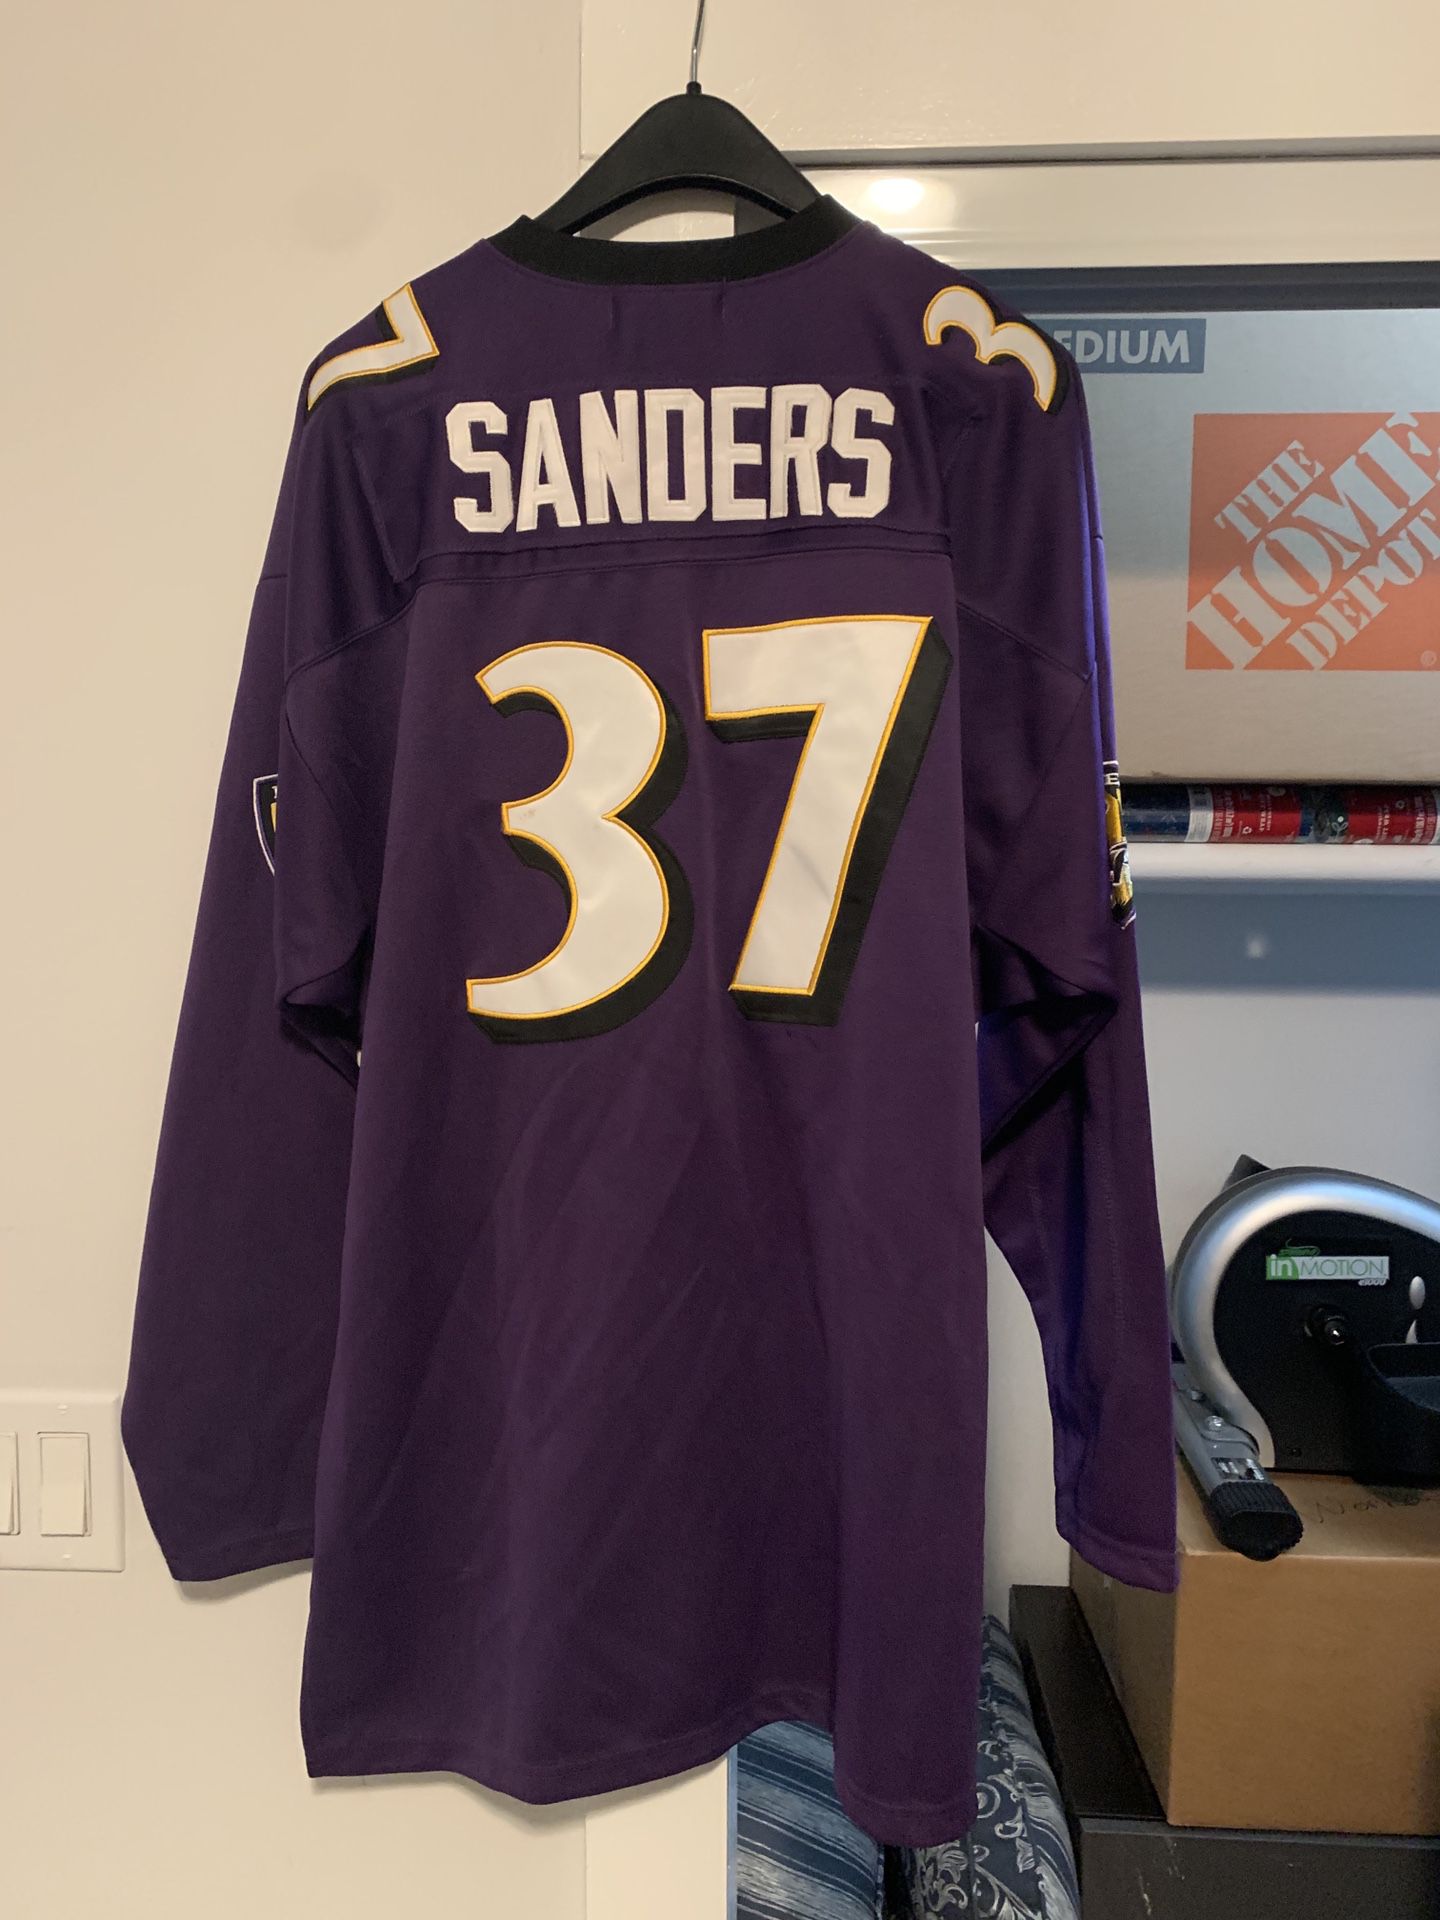 Deion Sanders Jersey for Sale in Atlanta, GA - OfferUp